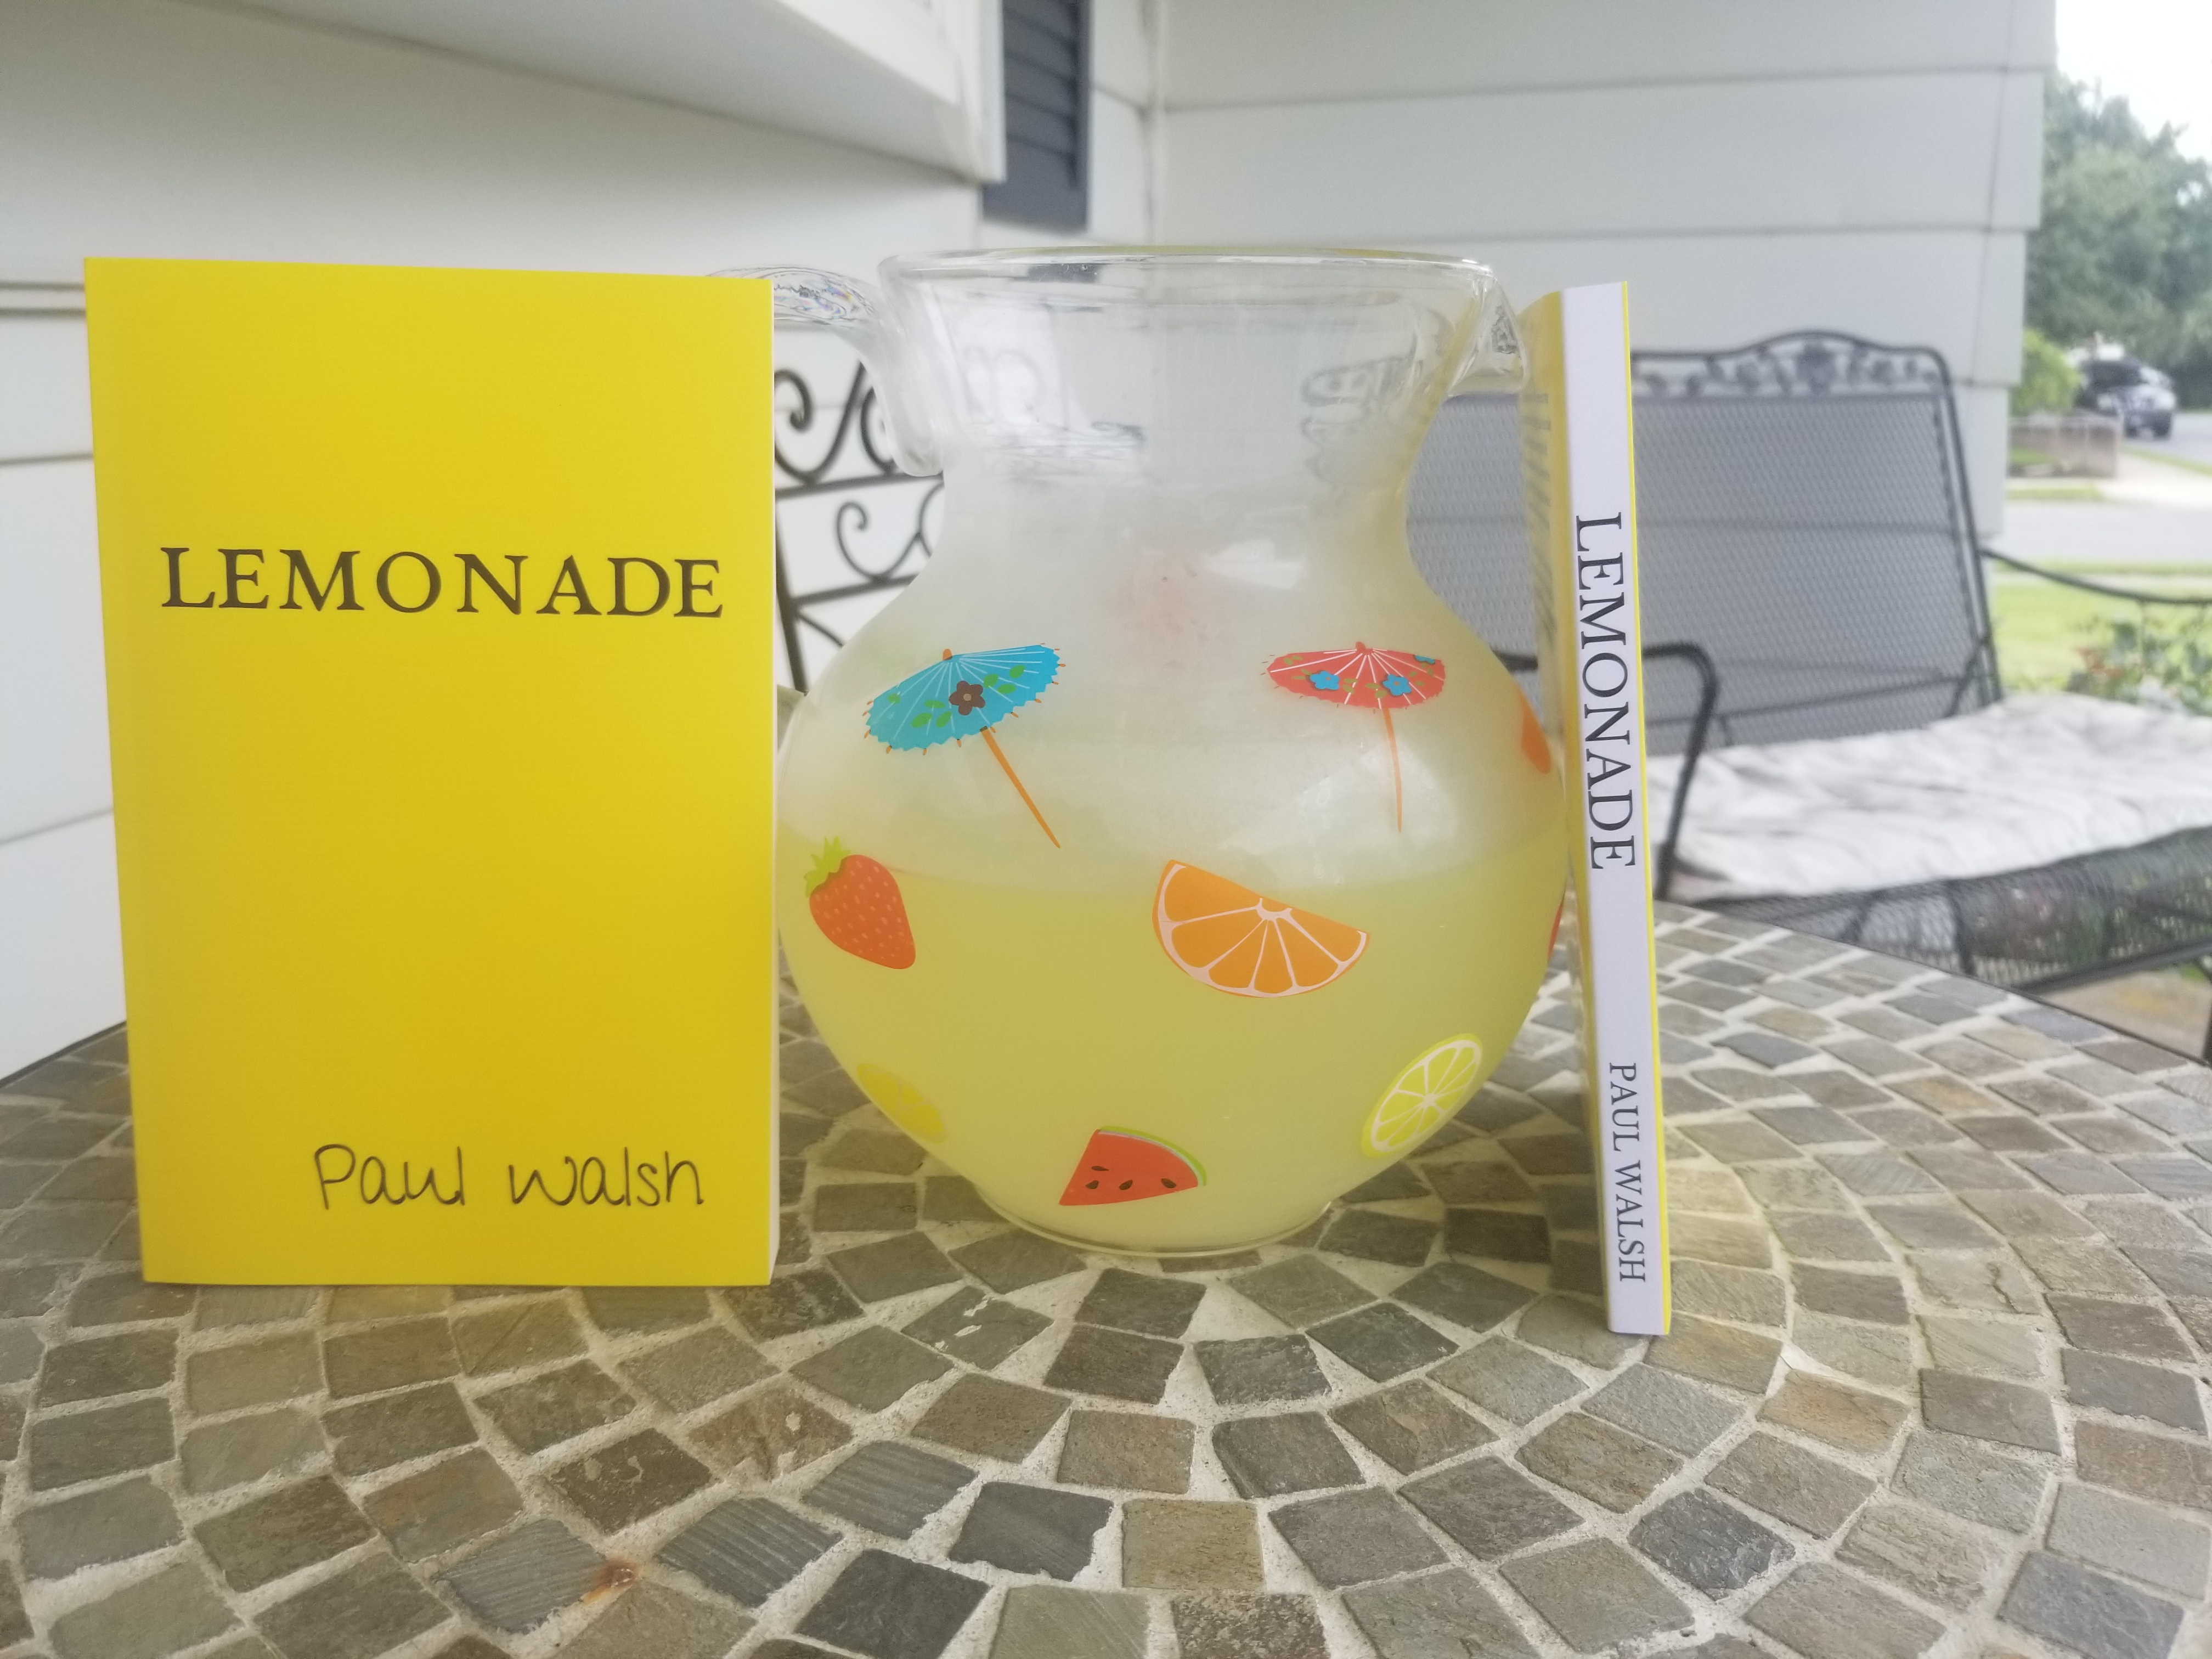 Paul Walsh's new book, Lemonade